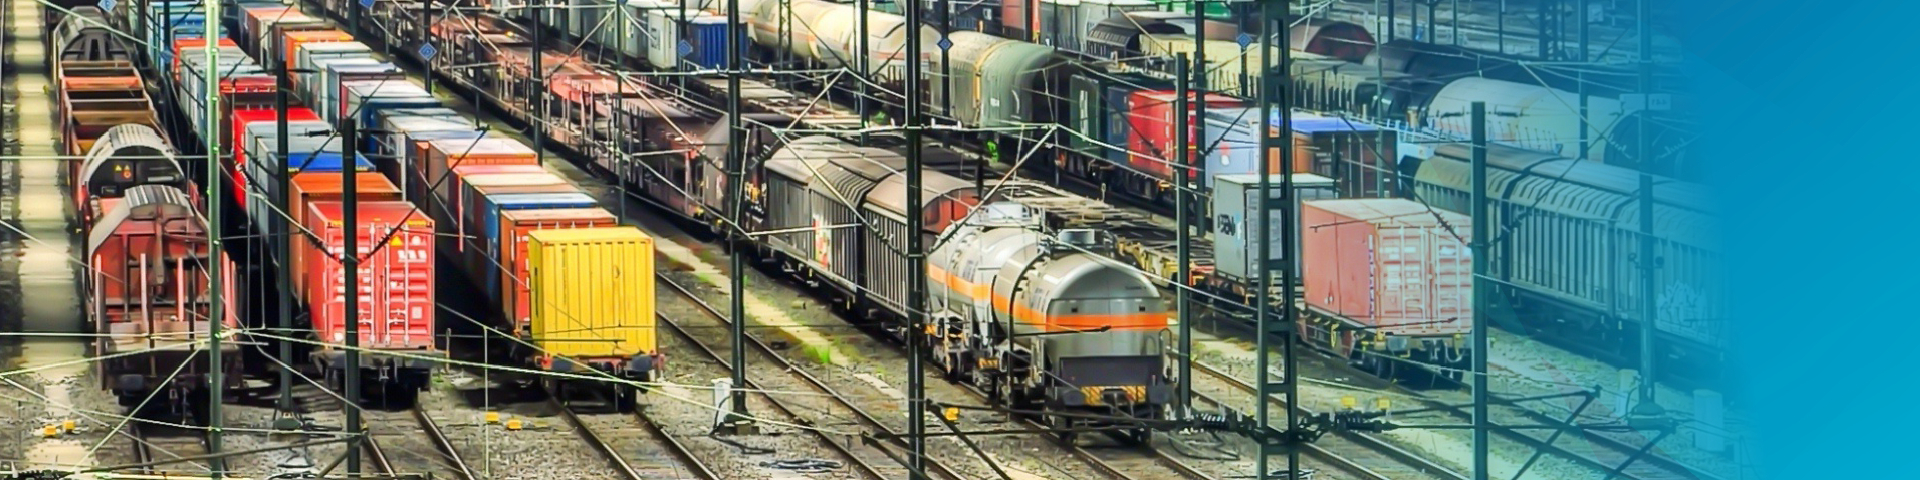 DB Systel Venture railway yard